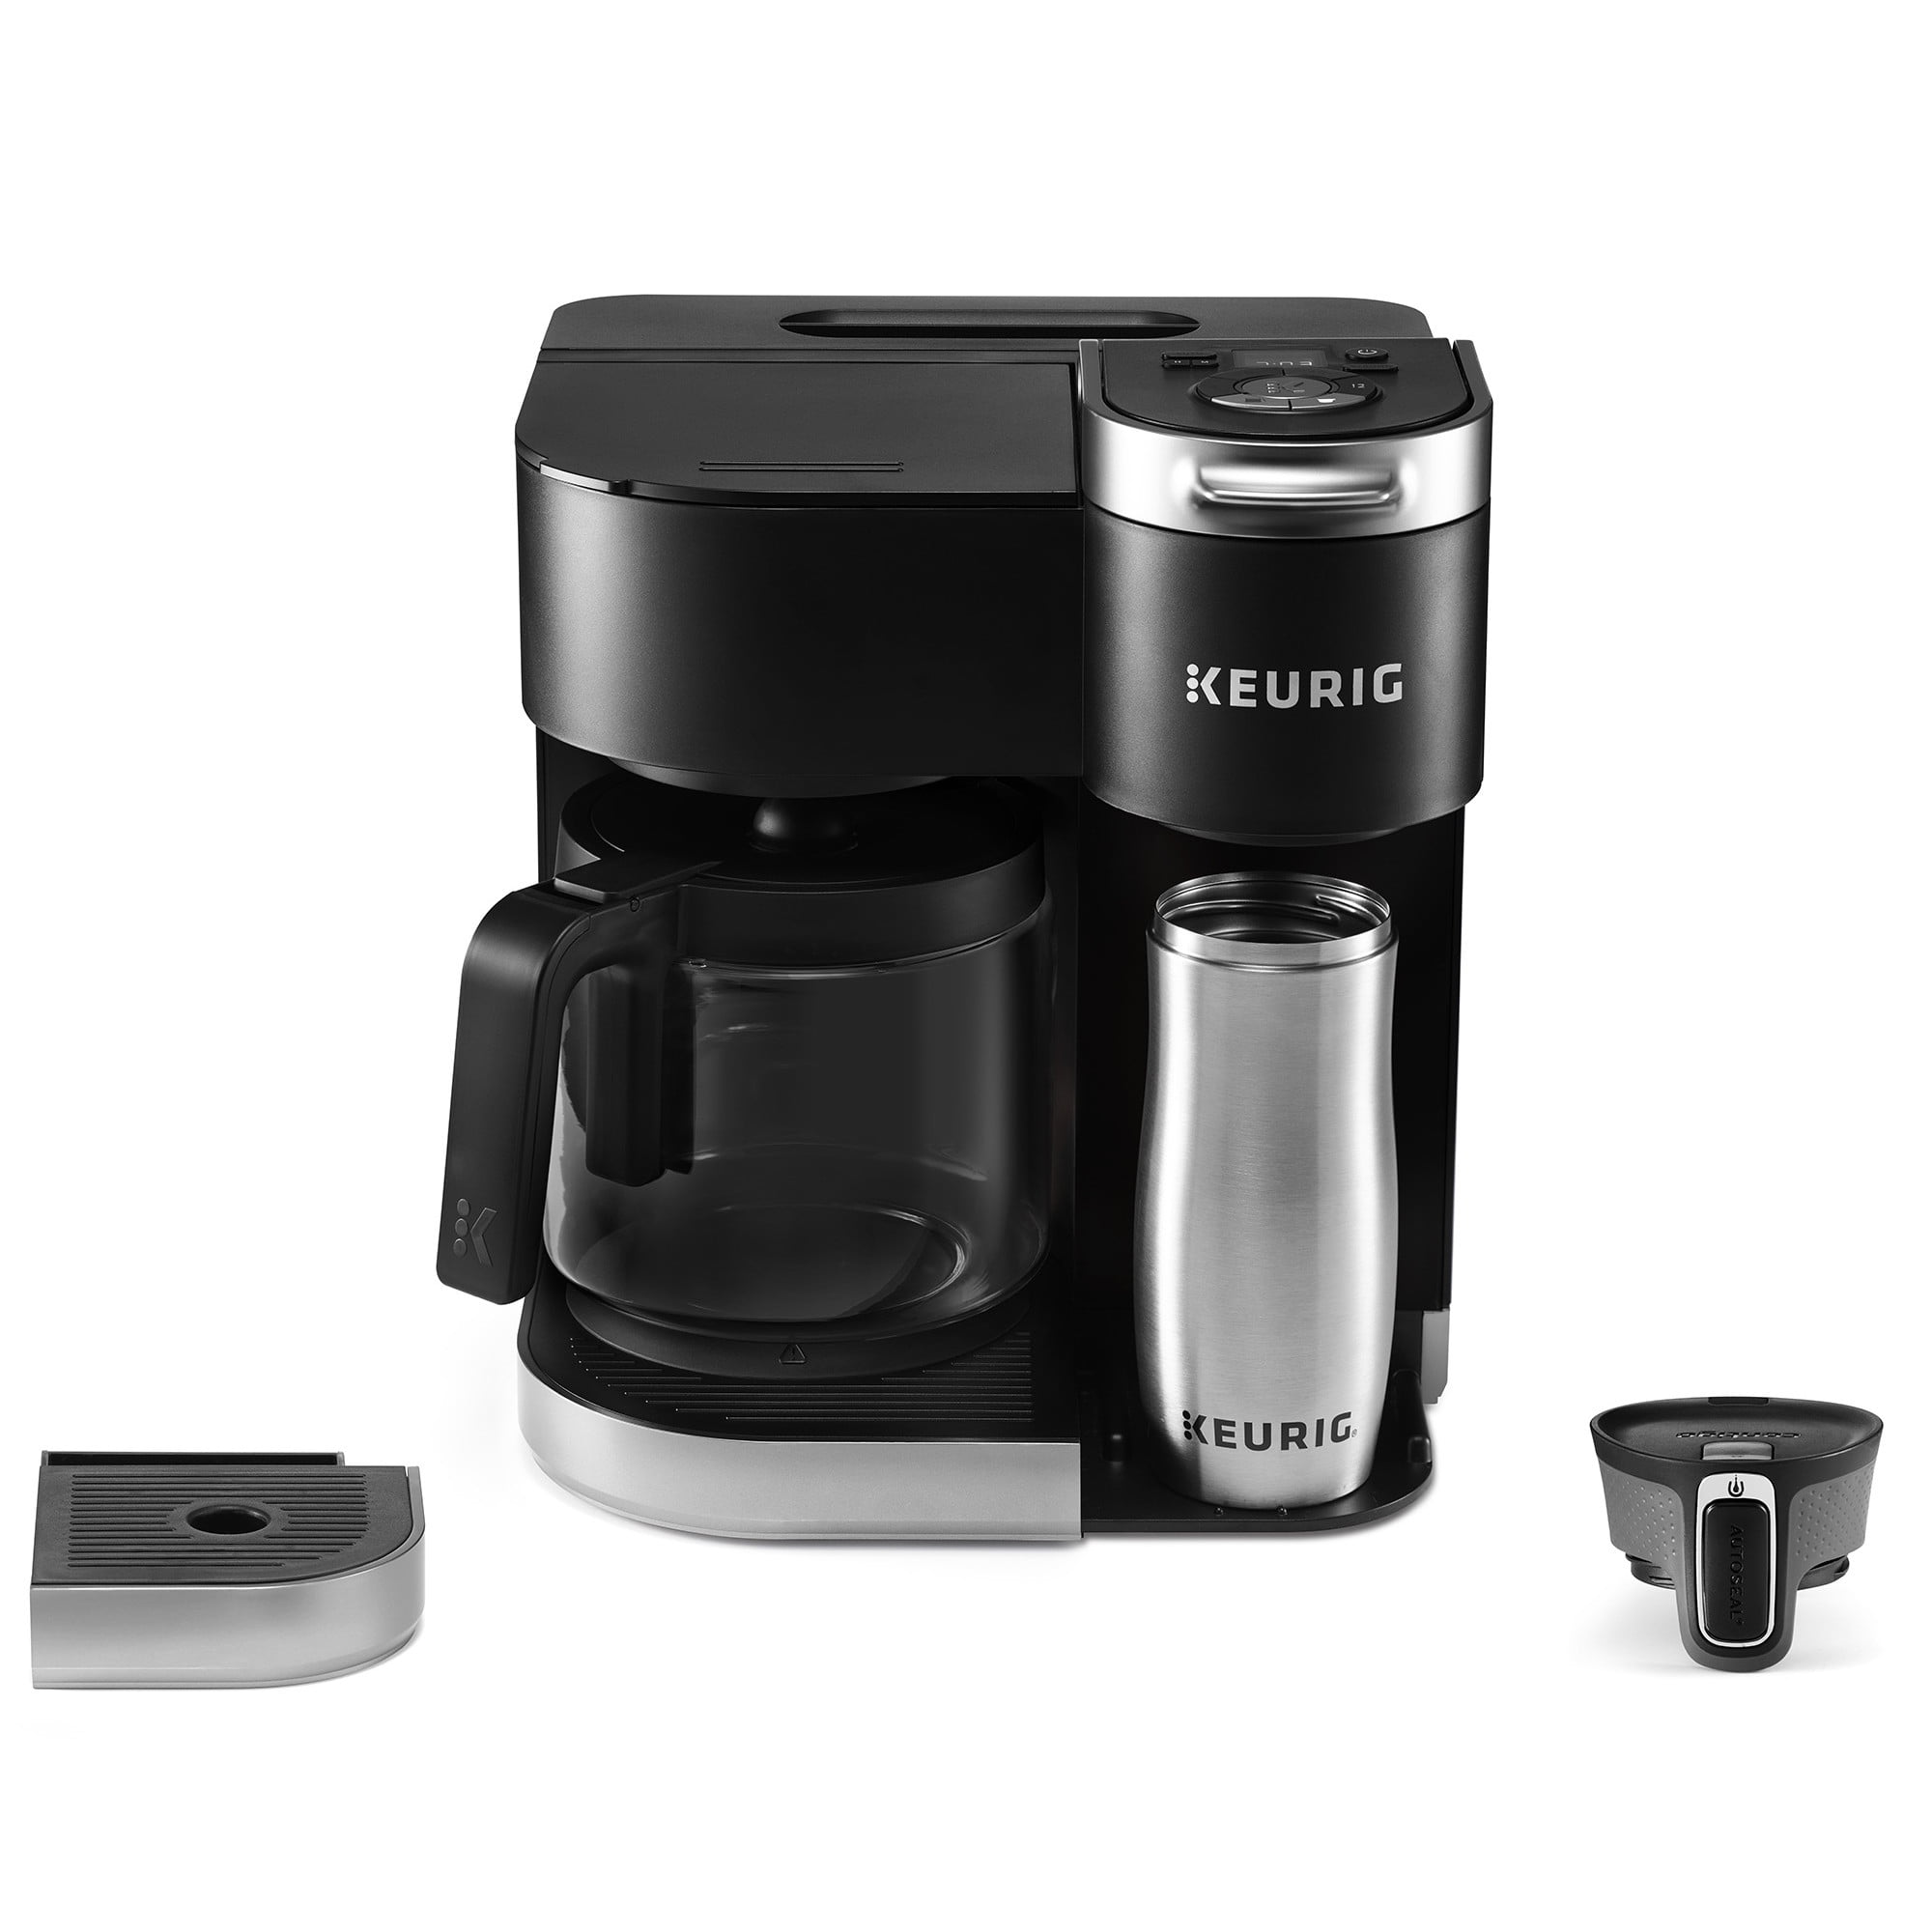 Keurig® K-Slim™ Single-Serve Coffee Maker, Black